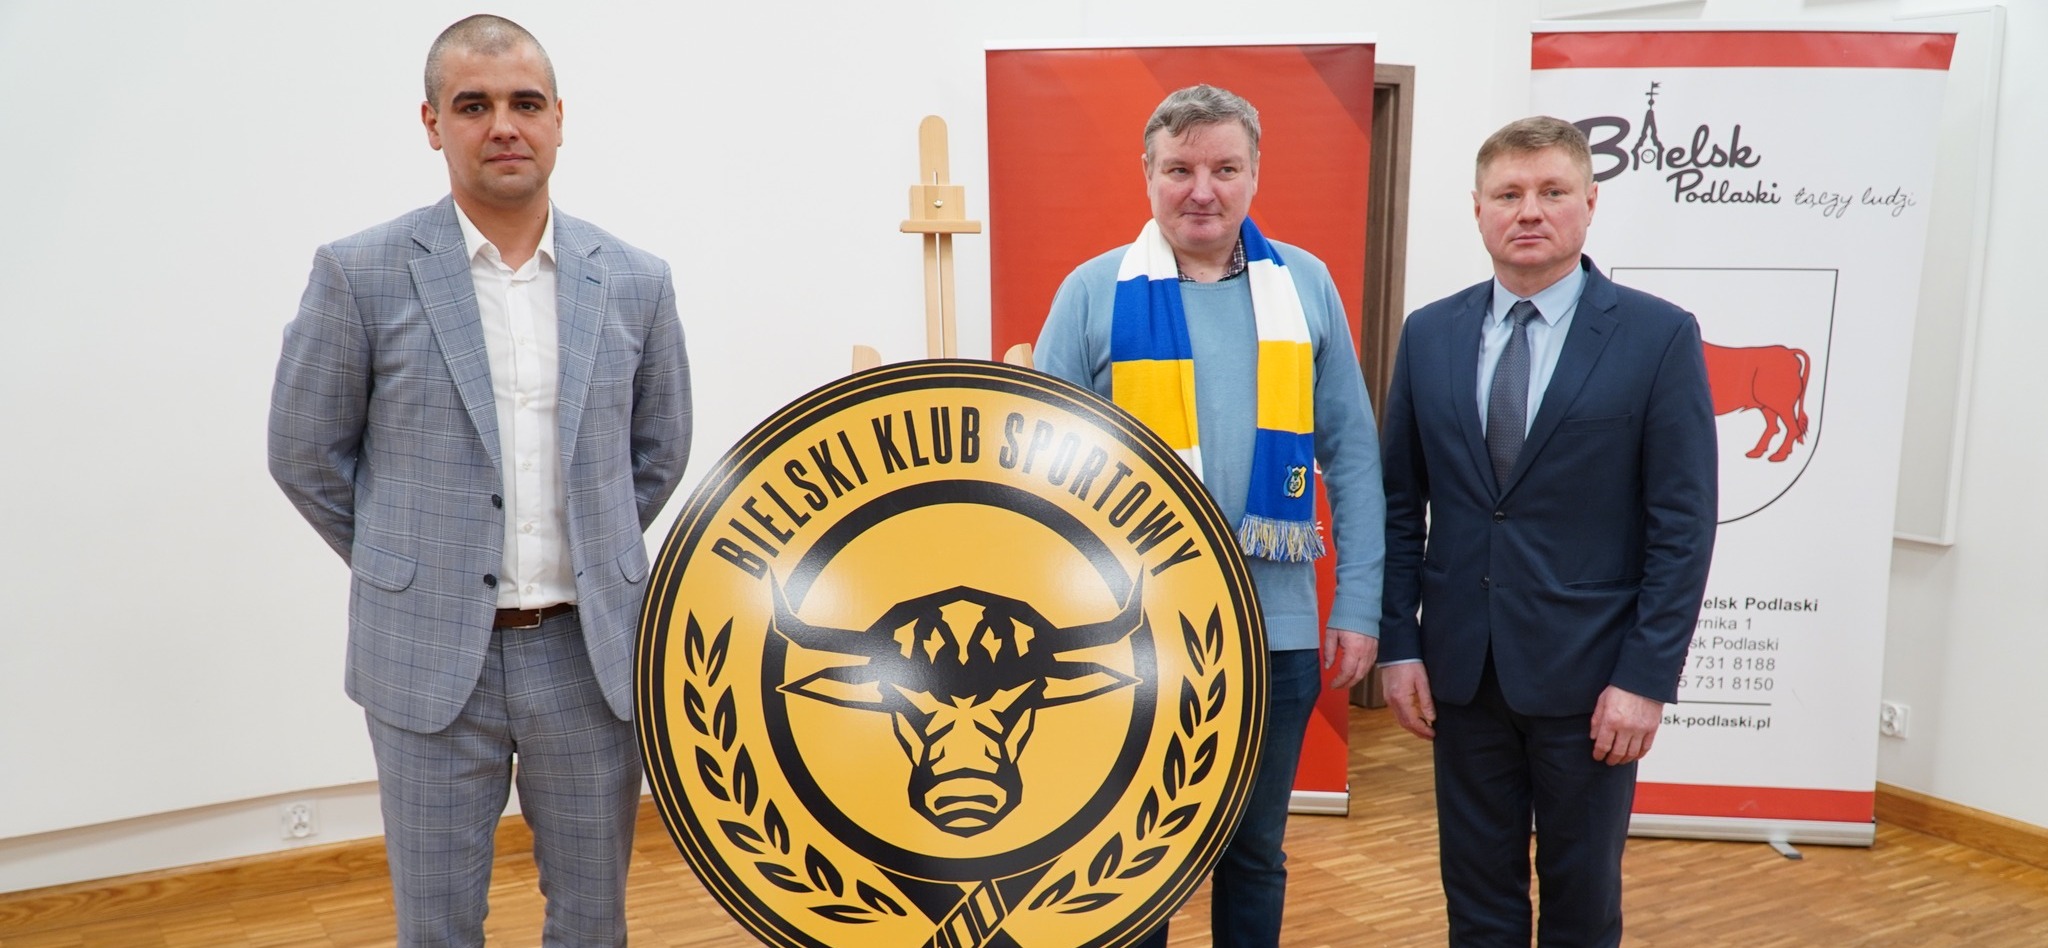 Trzech mężczyzn przy logo bielskiego klubu sportowego